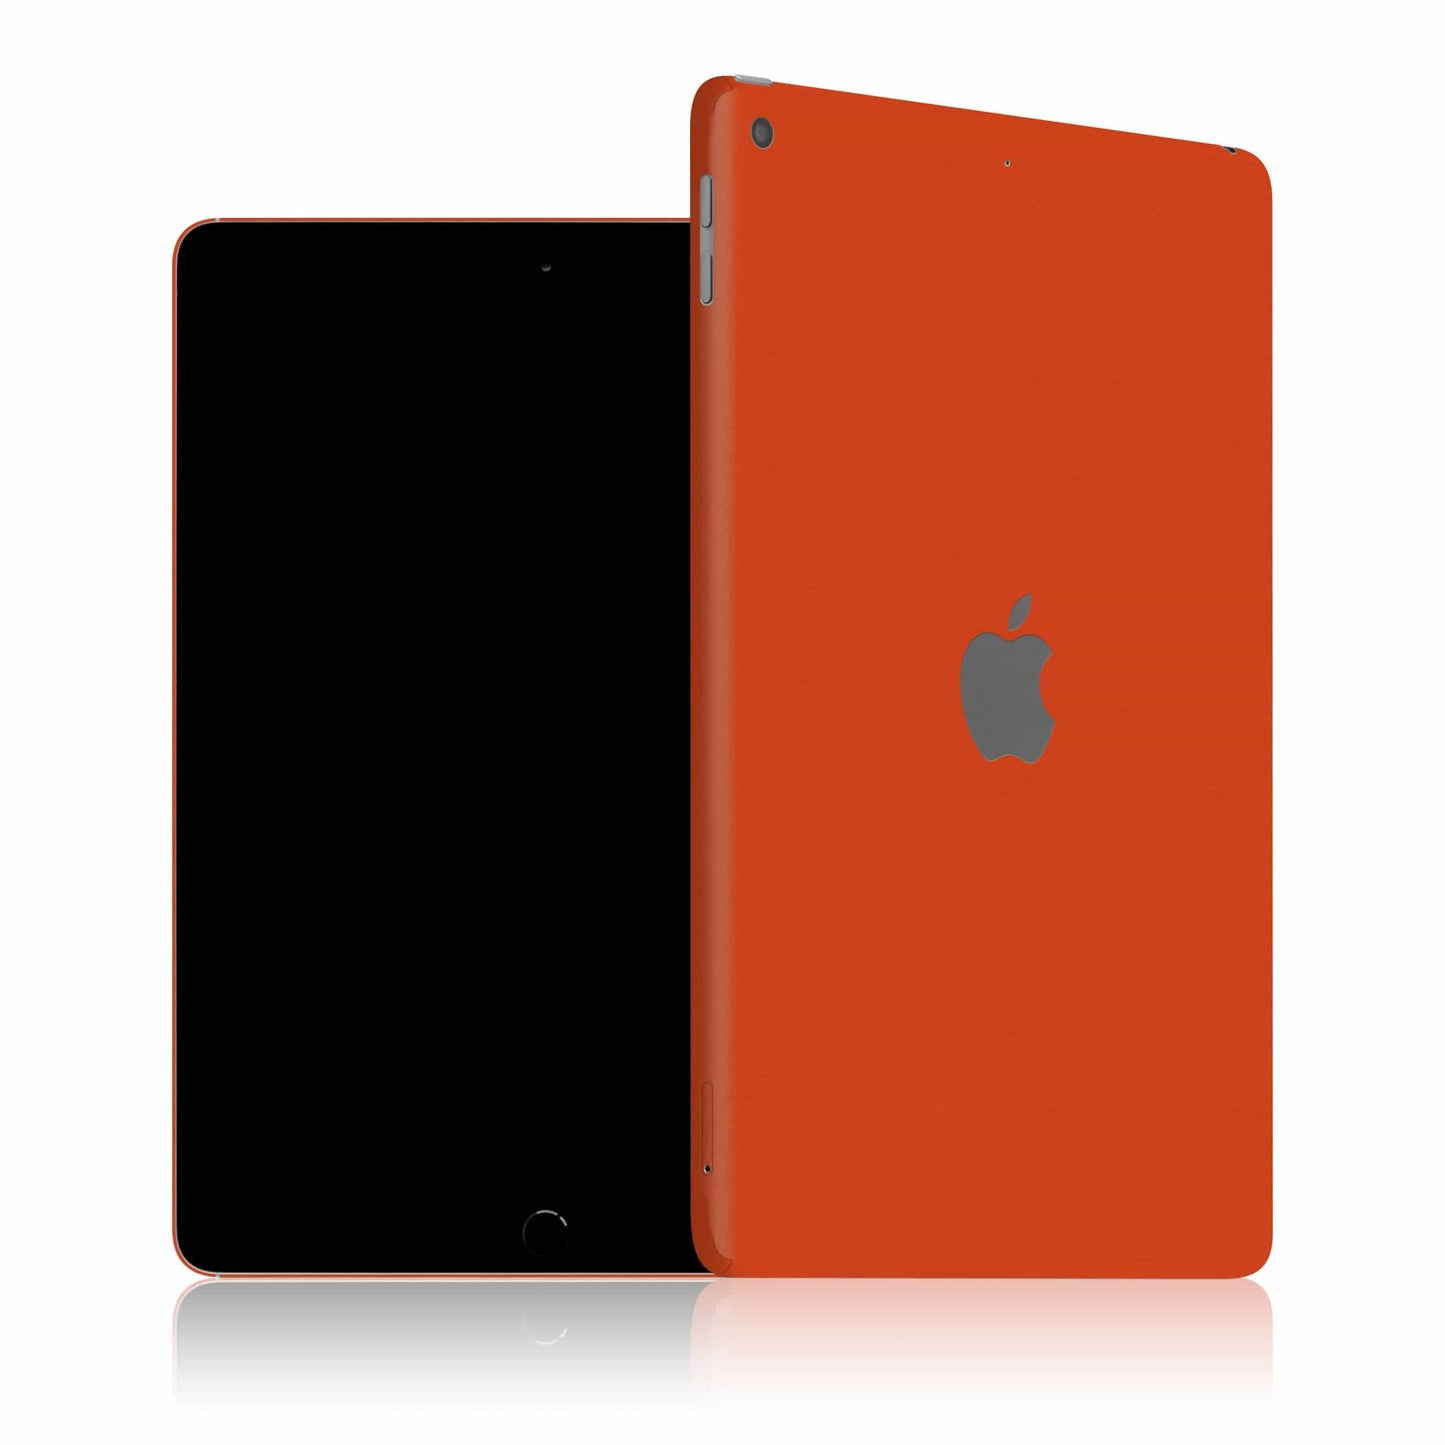 iPad 6 (2018) - Color Edition